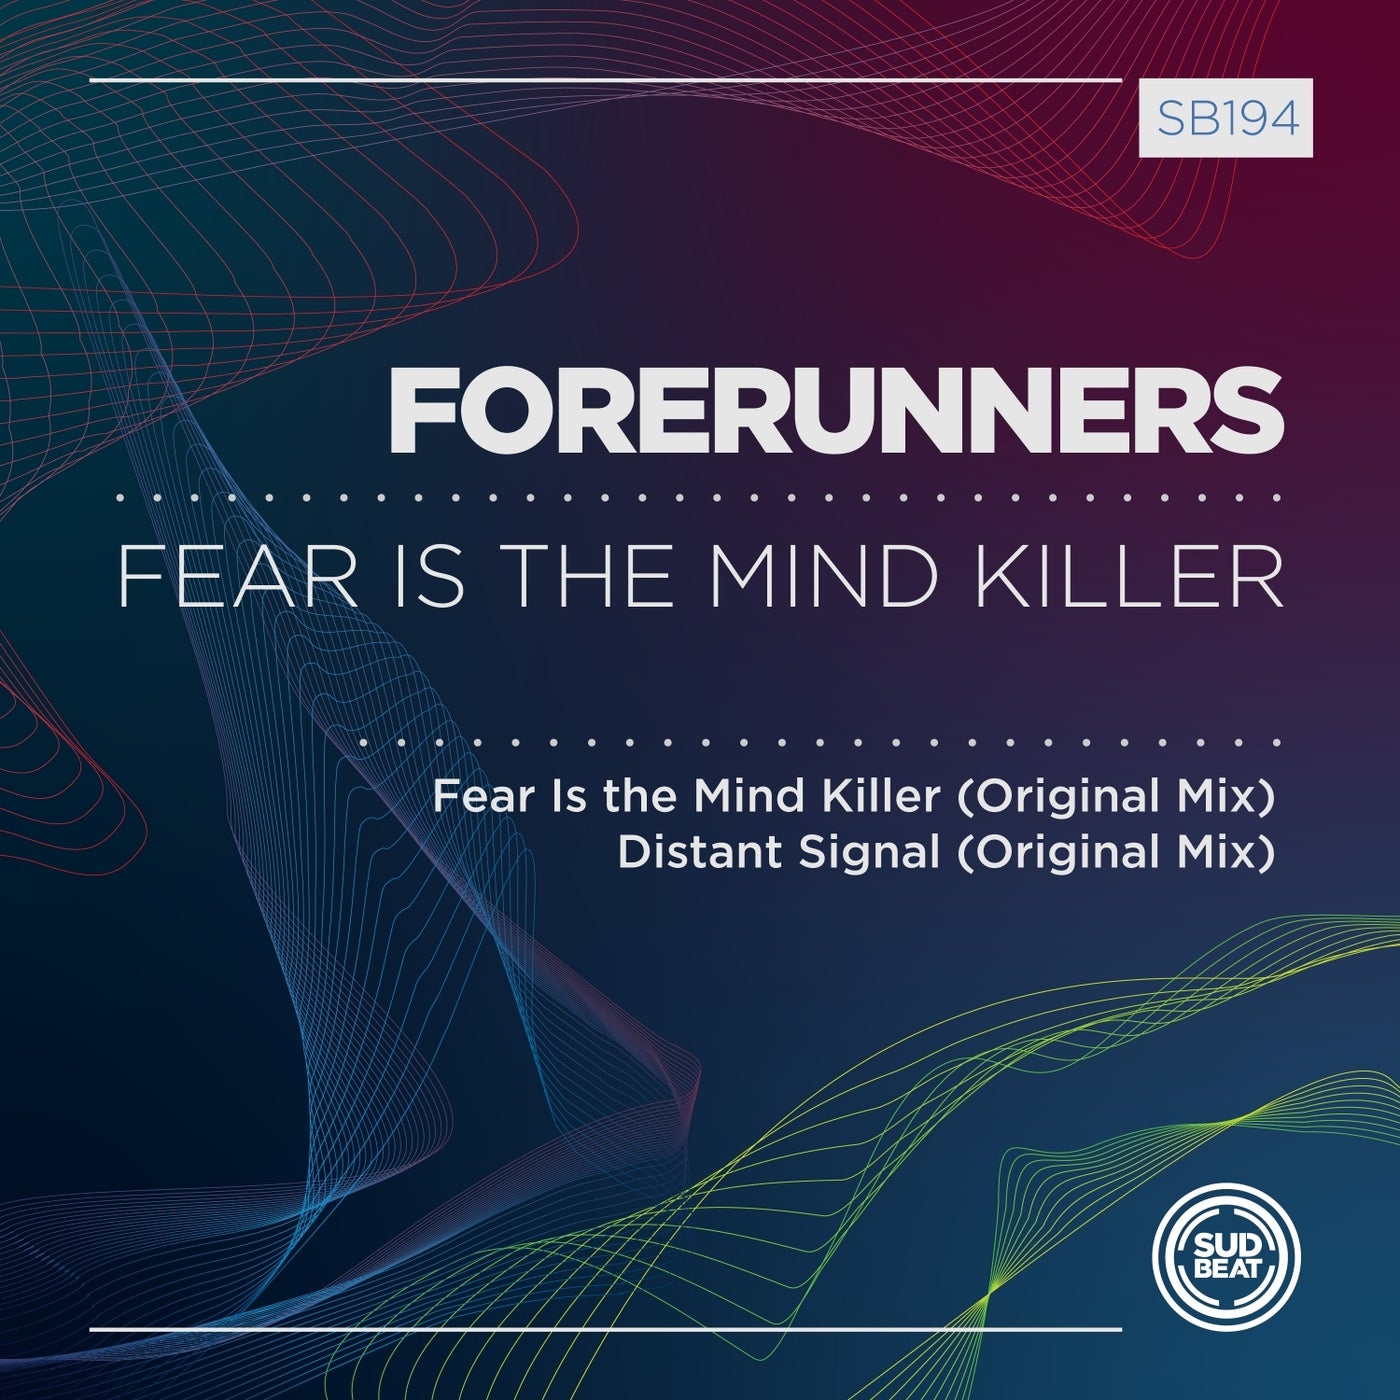 Forerunners - Distant Signal (Original Mix)